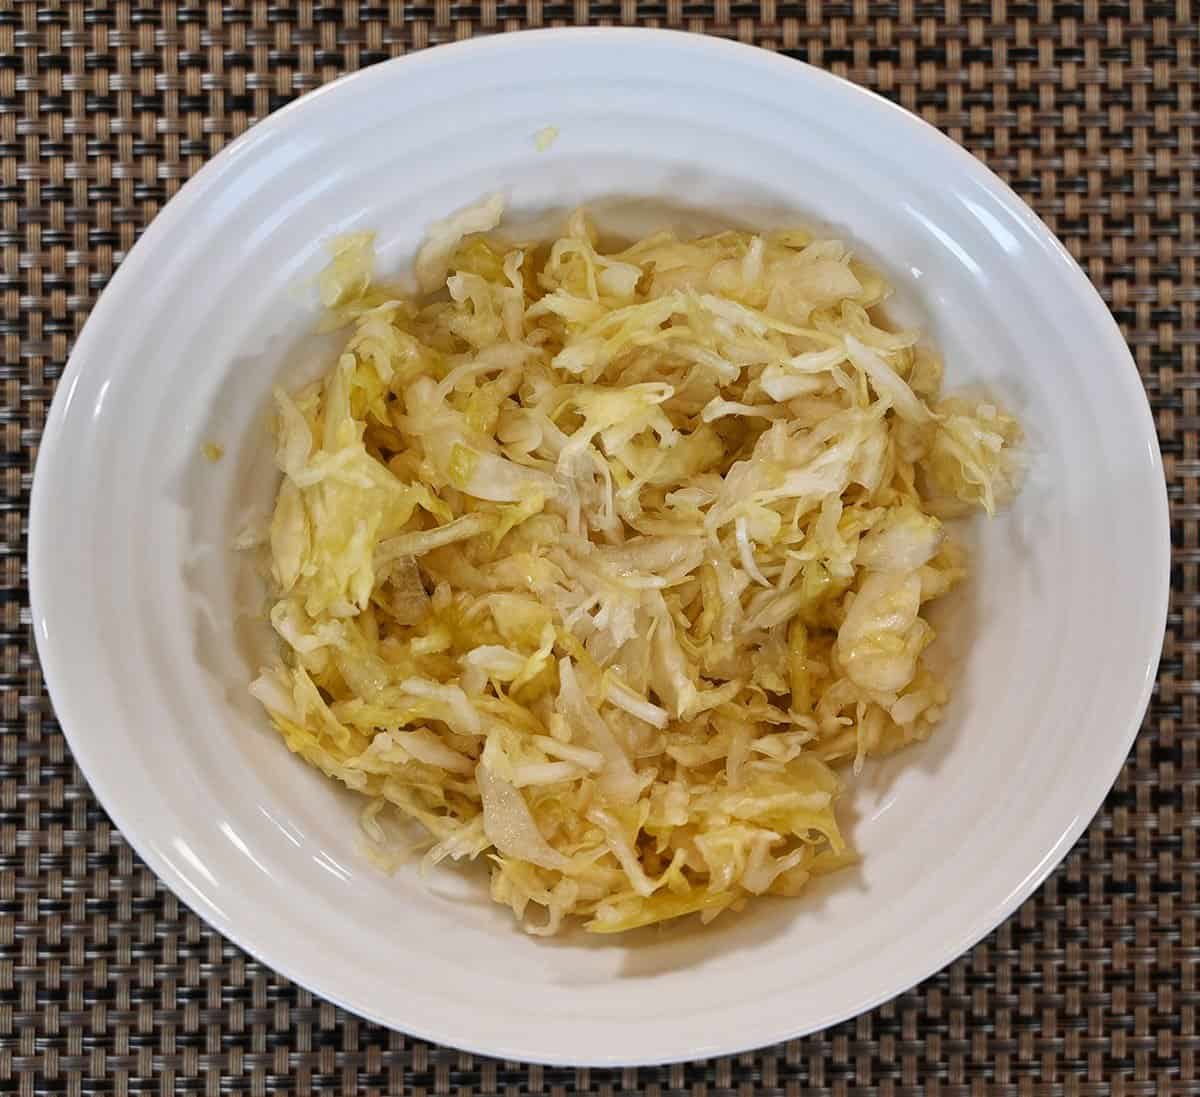 Image of the Wildbrine Sauerkraut in a white bowl. 